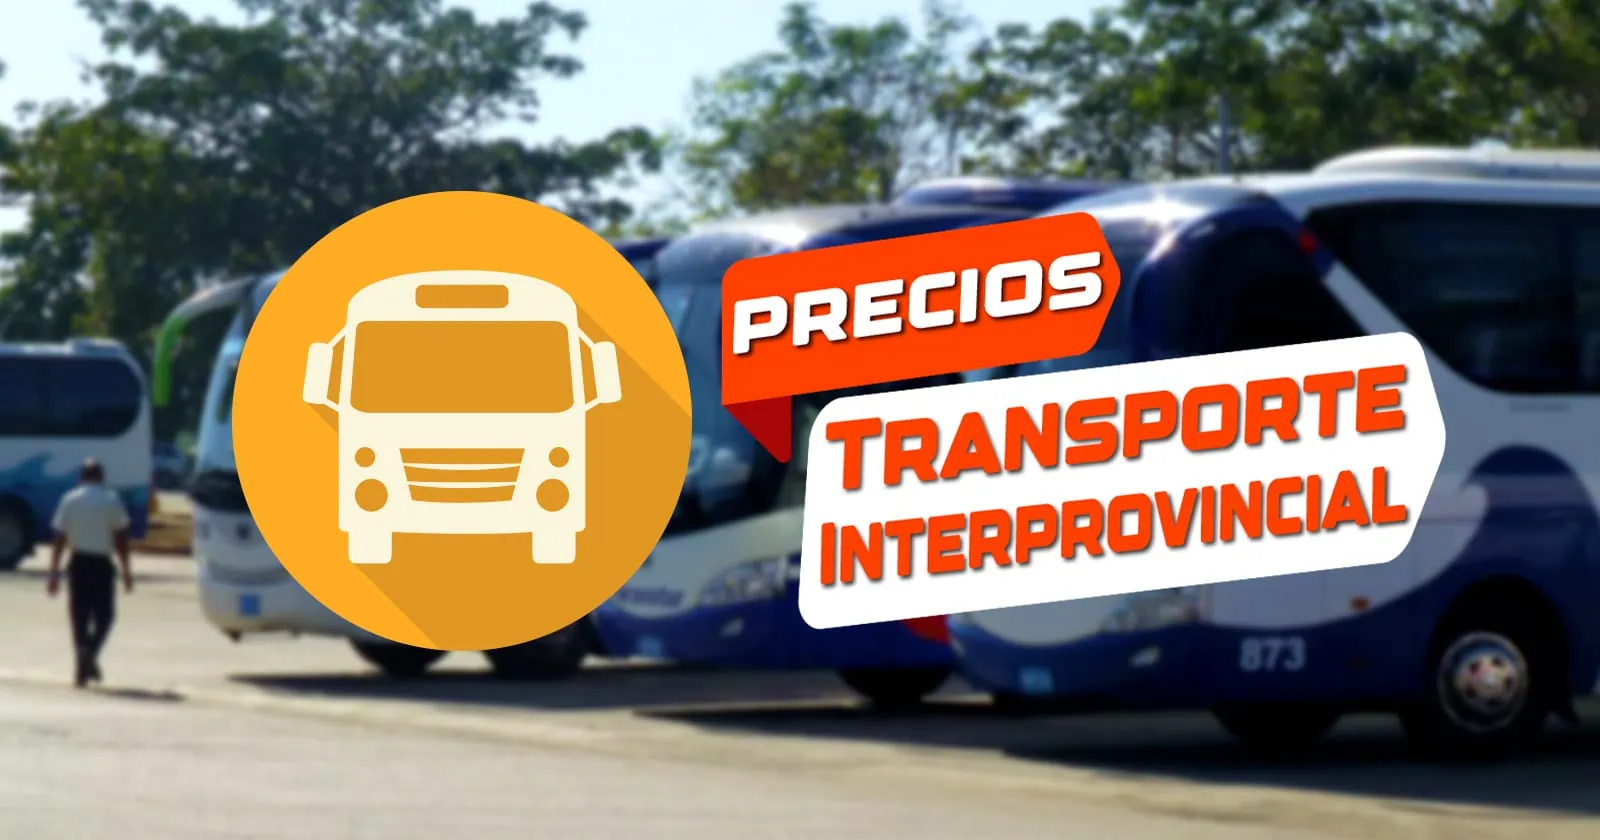 Cambios en Precios del Transporte Interprovincial en Cuba: Estas Serán las Nuevas Tarifas